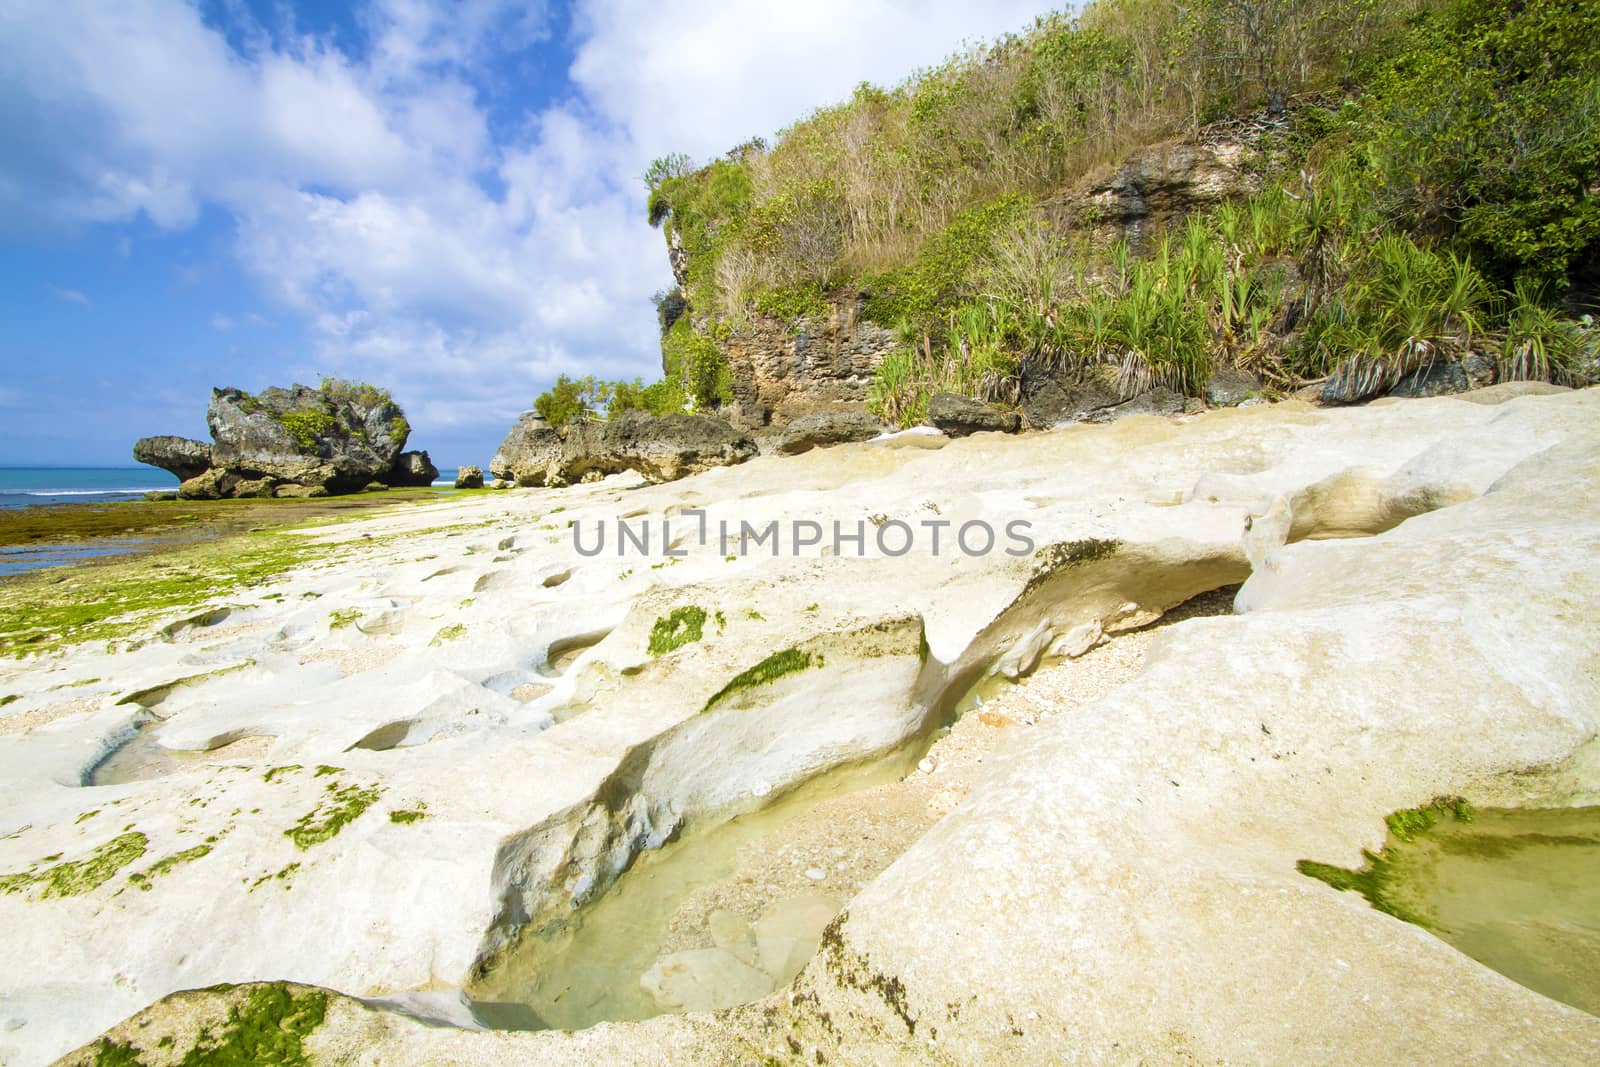 Deserted beach at Bali island.Indonesia.